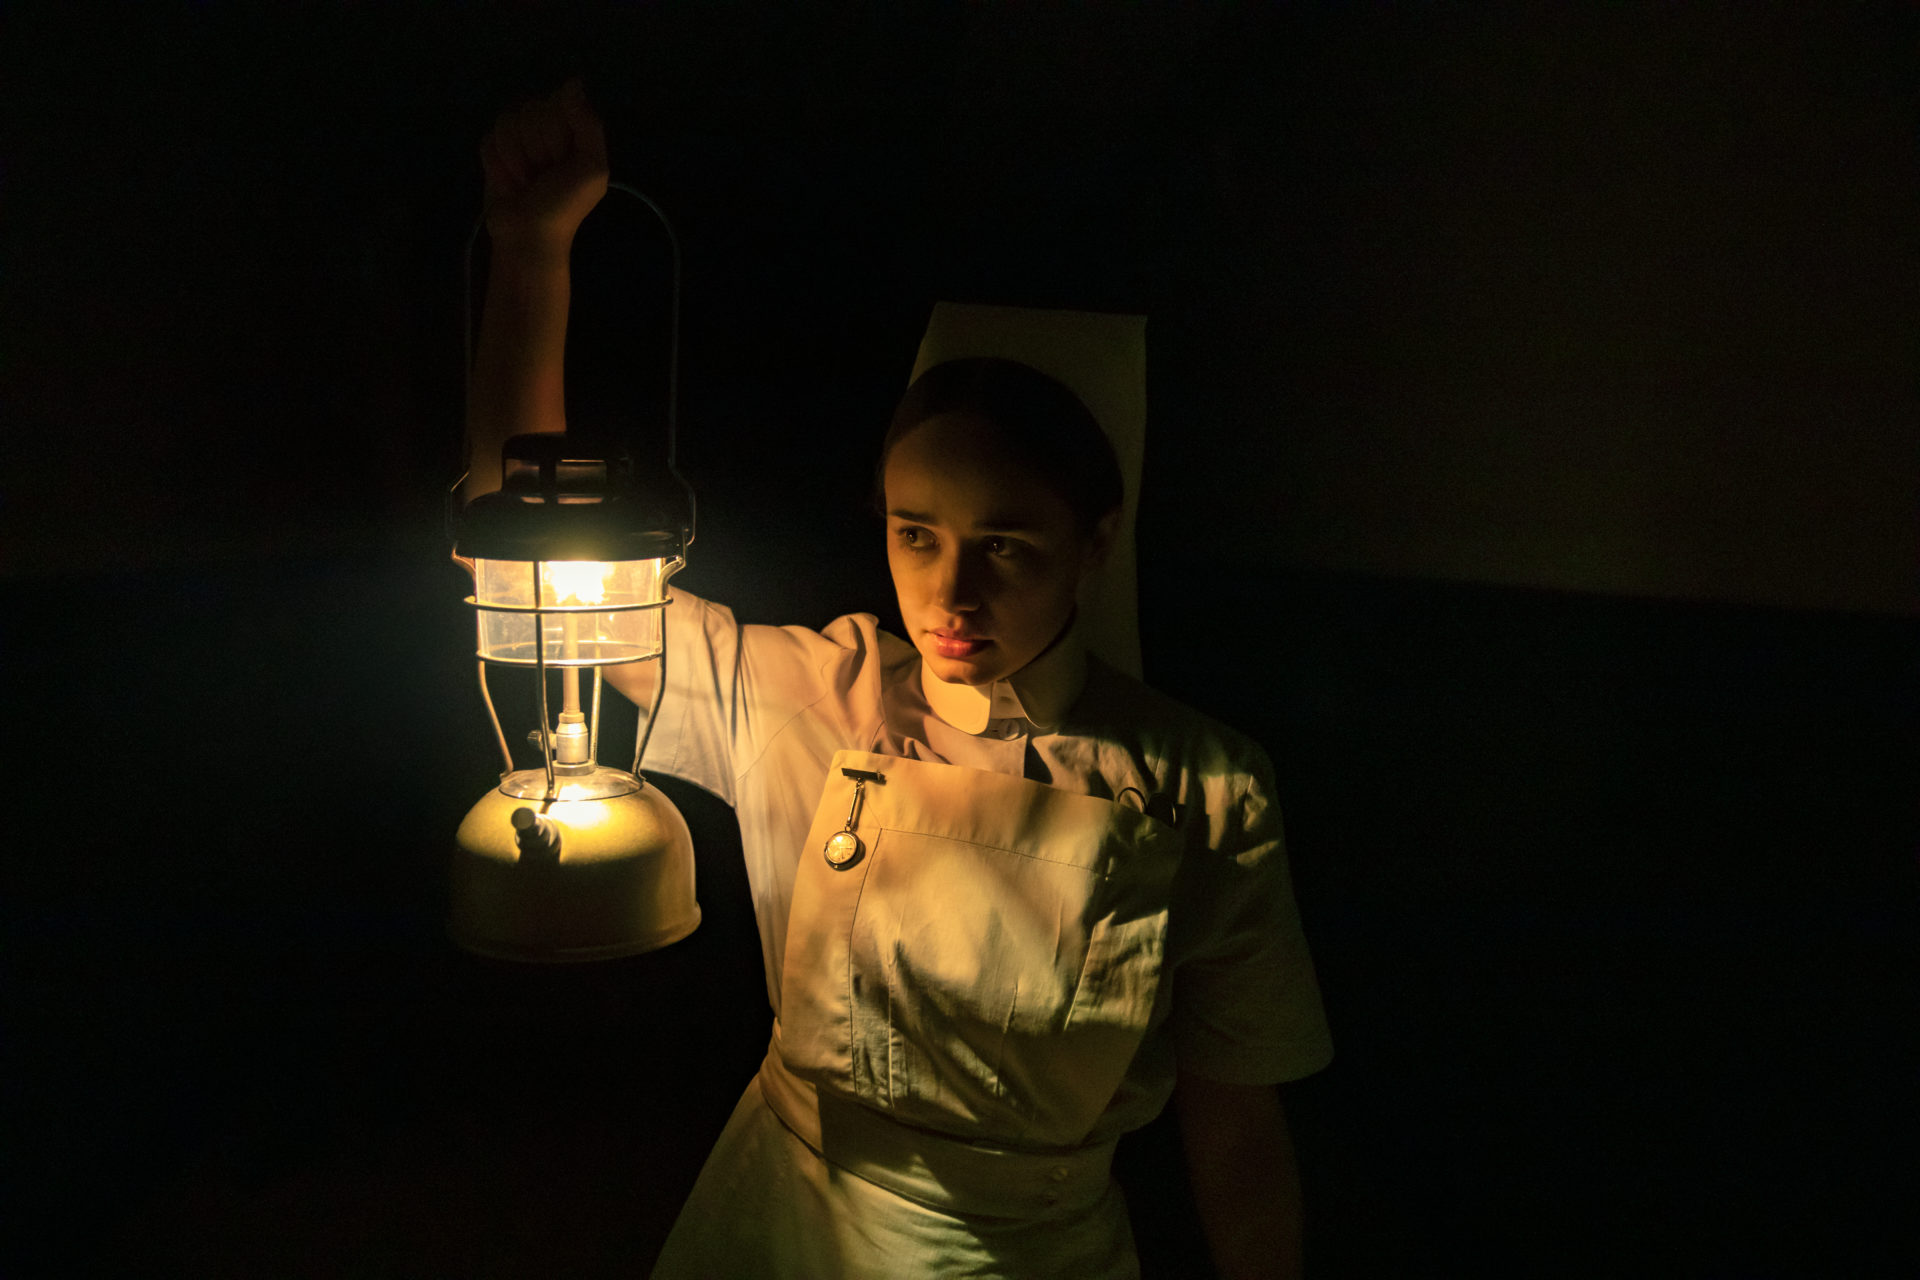 zdjęcie: kobieta w starym stroju pielęgniarki z uniesioną lampą w ręce